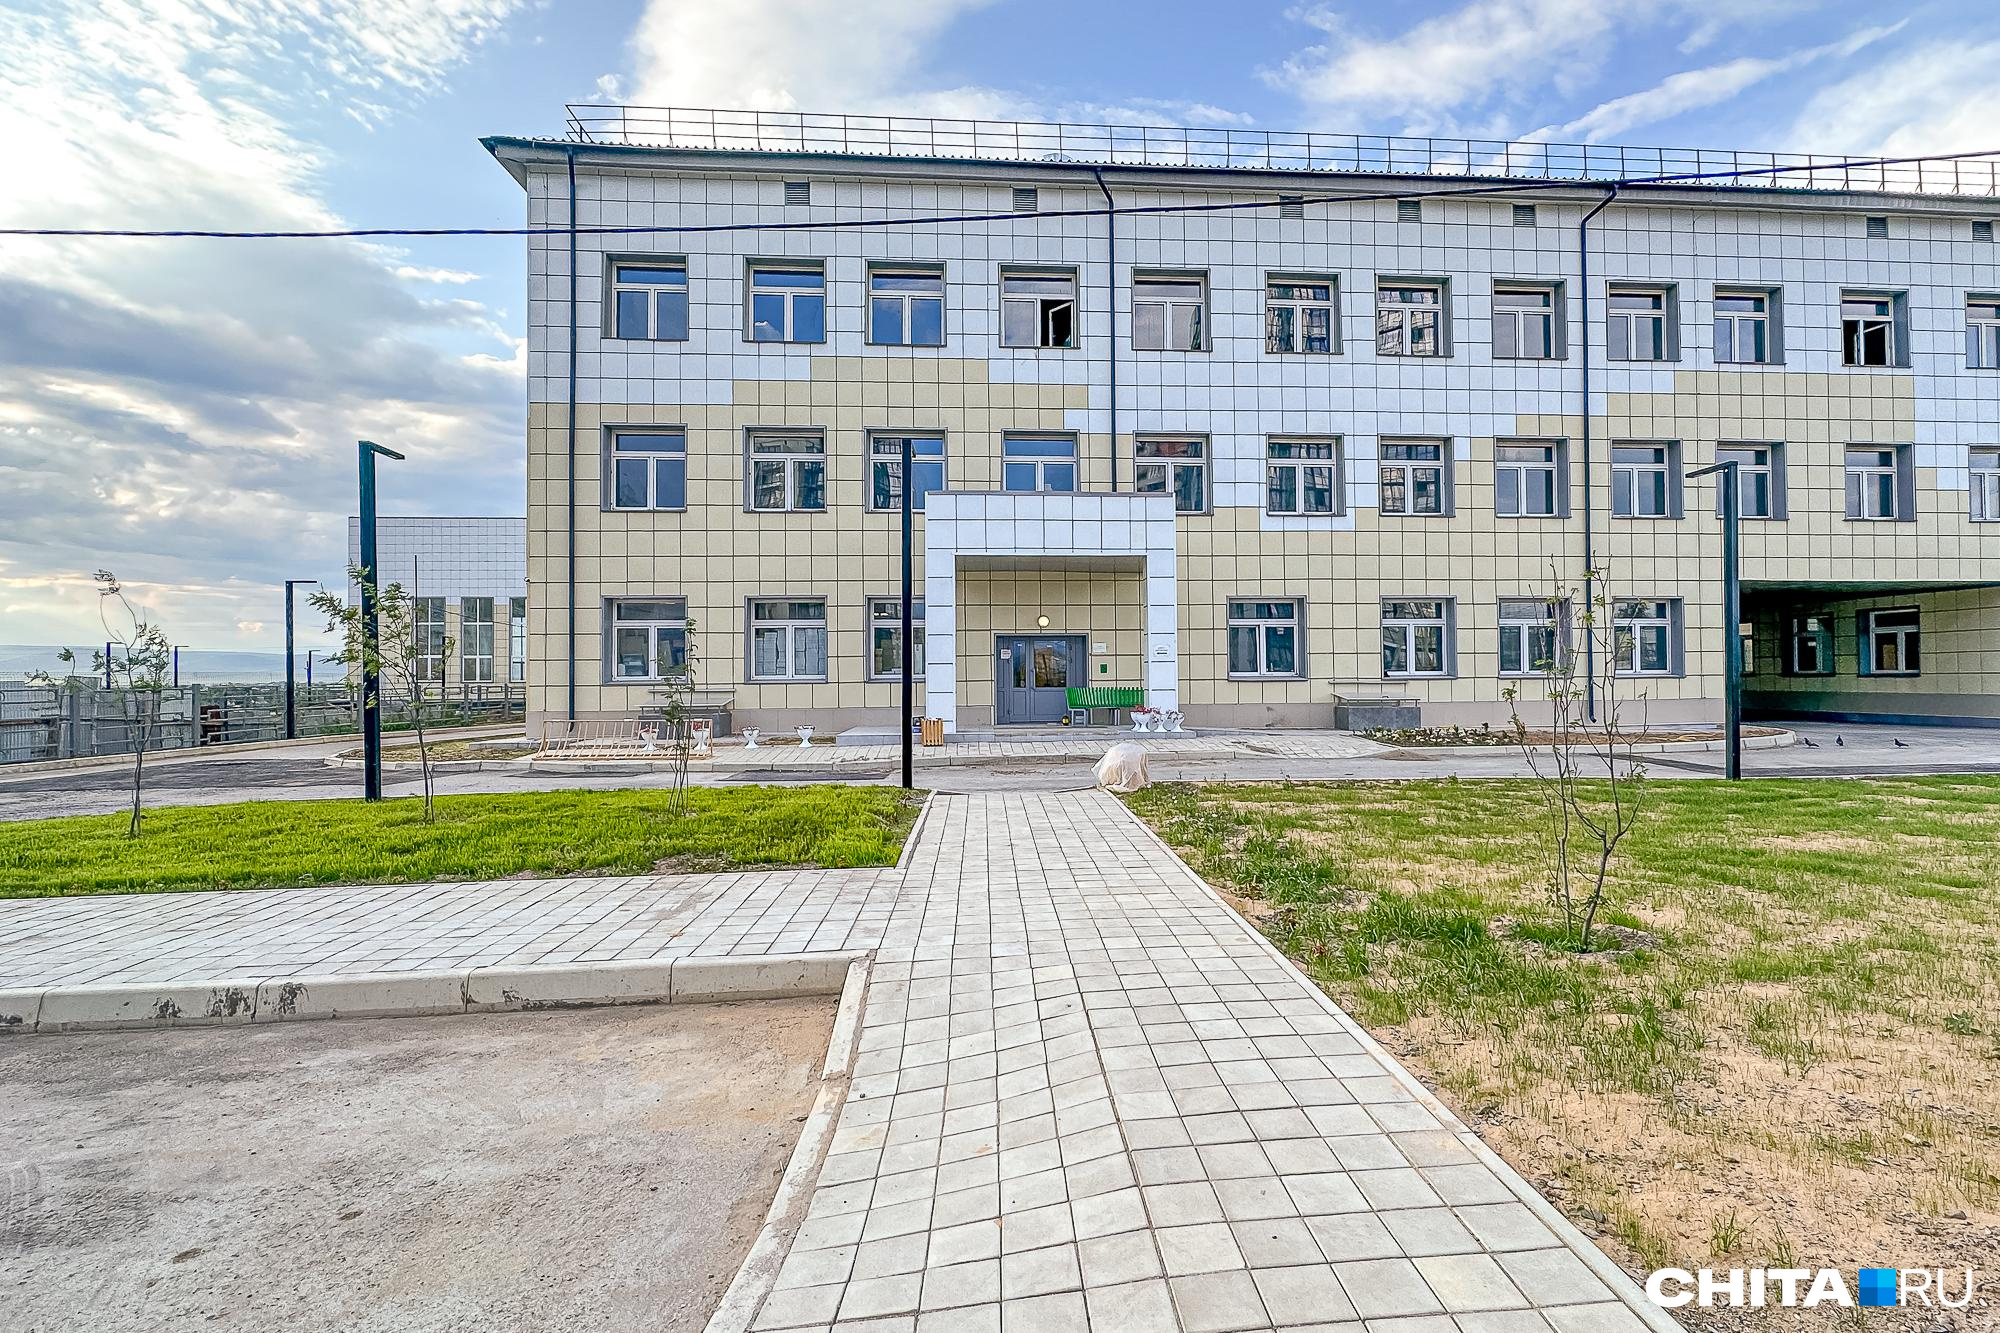 Суд признал незаконной концессию на строительство школы в читинском поселке Каштак